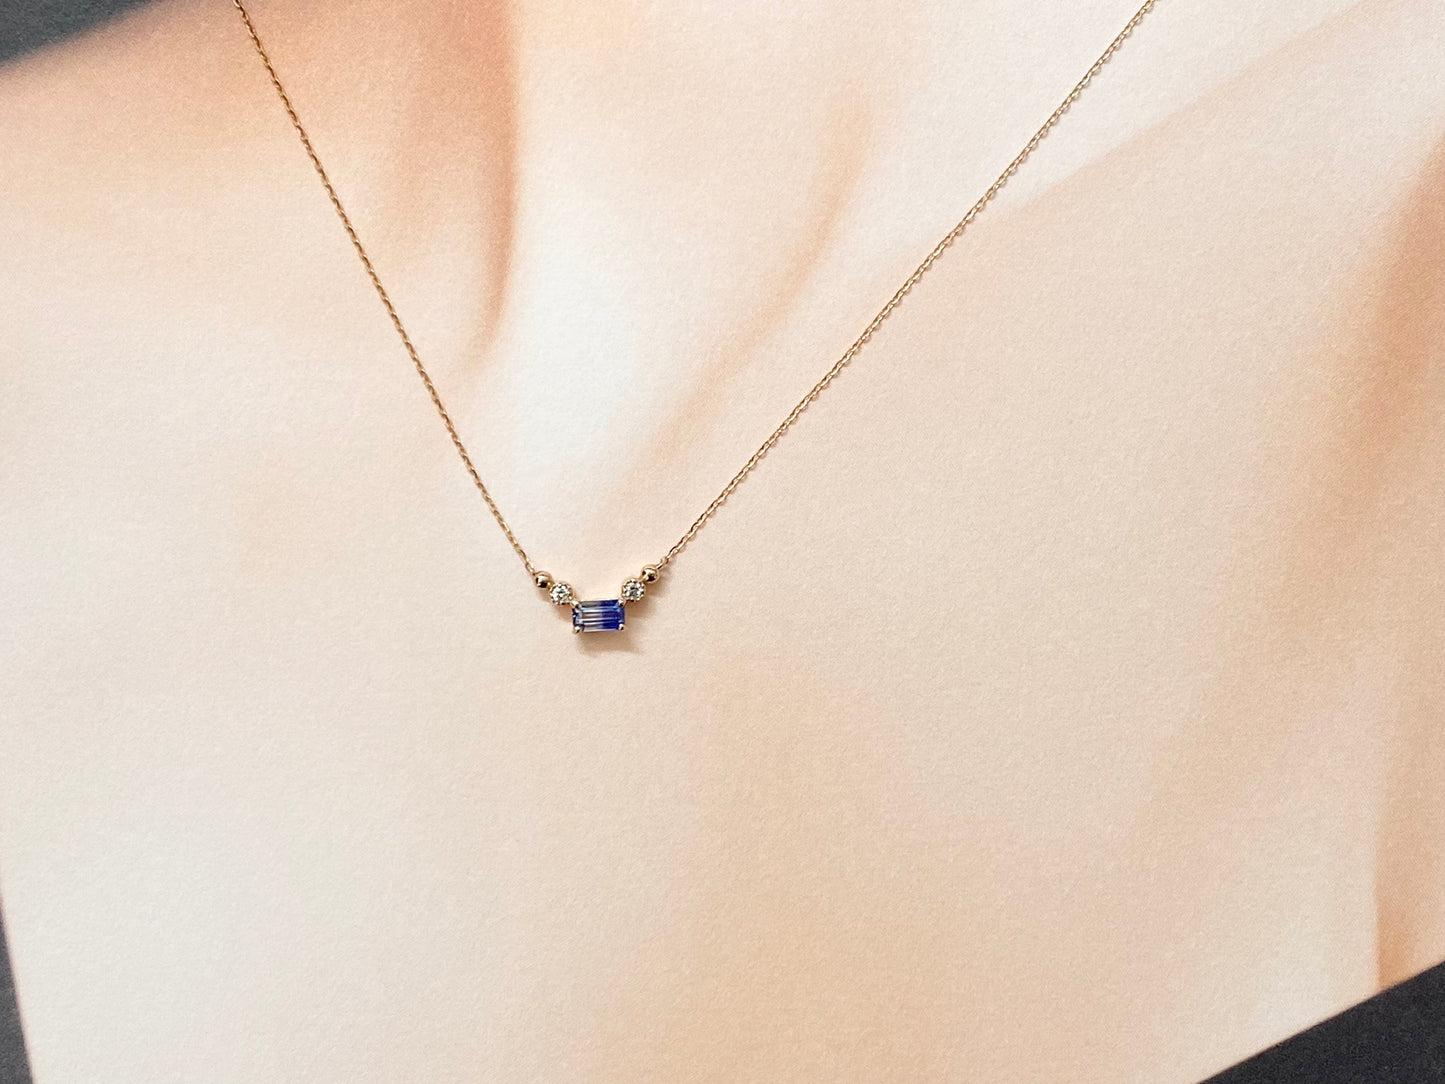 New] [Rare Stone] Bicolor Sapphire Necklace Jewelry